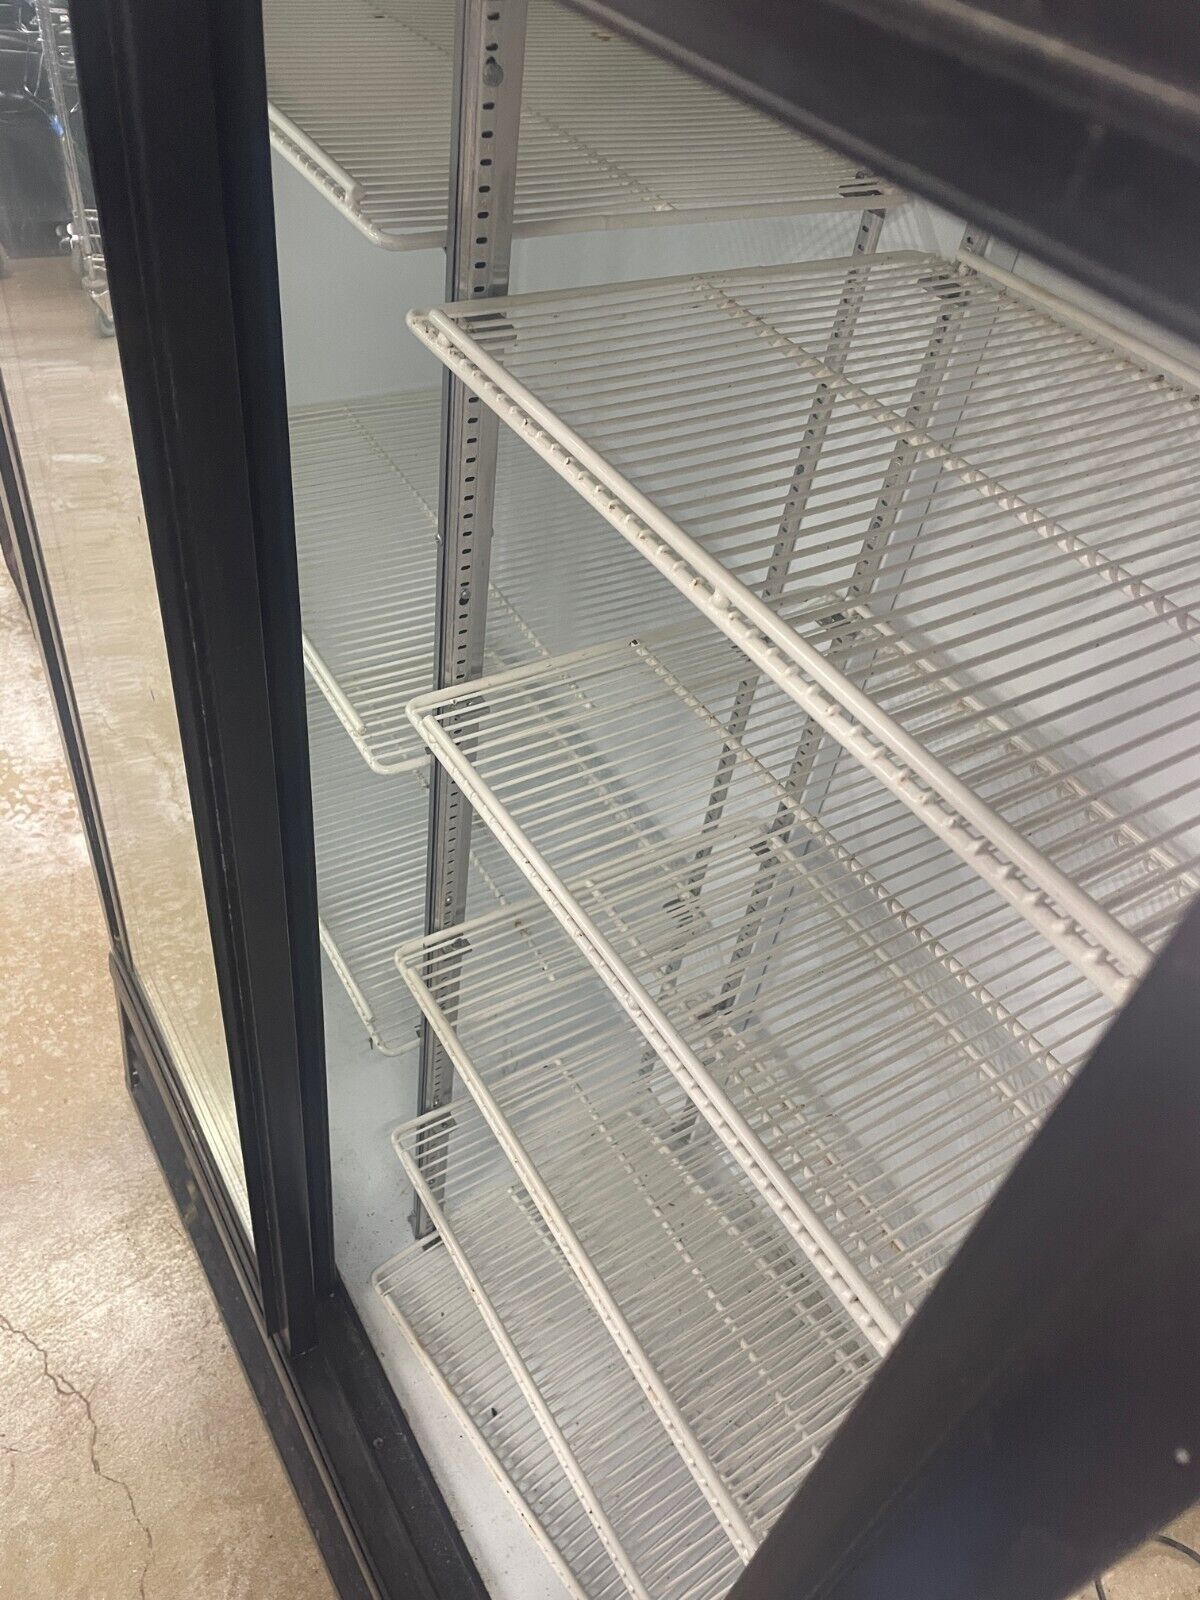 Beverage-Air SLM48 Commercial Refrigerator, All Purpose Cold, Slide Door Cooler